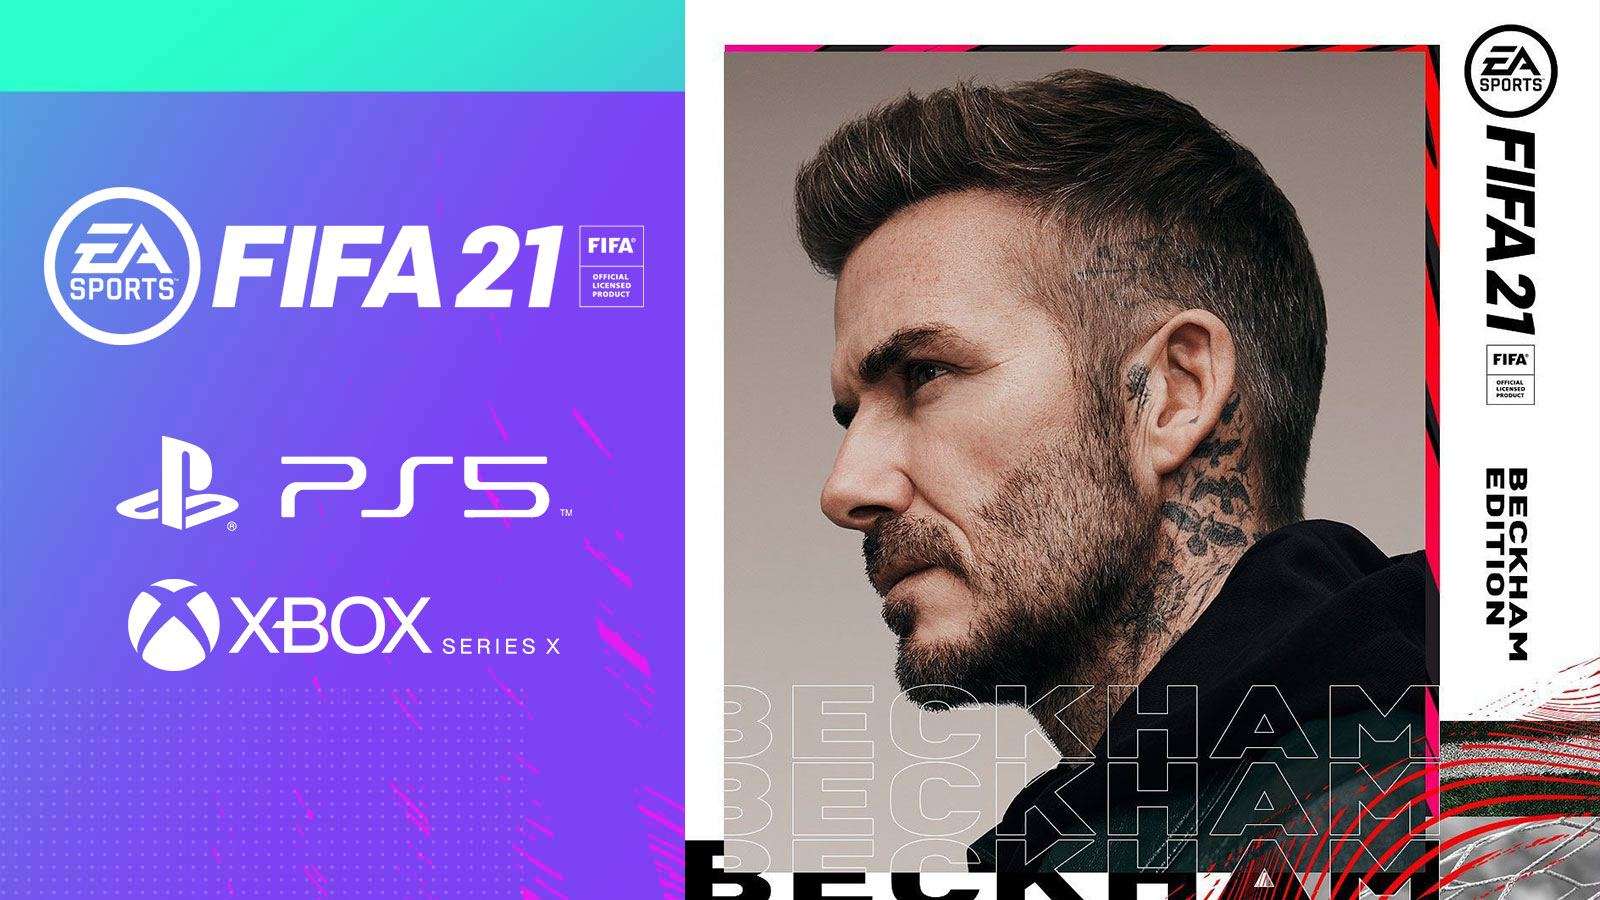 L'édition Beckham de FIFA 21 sur PS5/Xbox Series